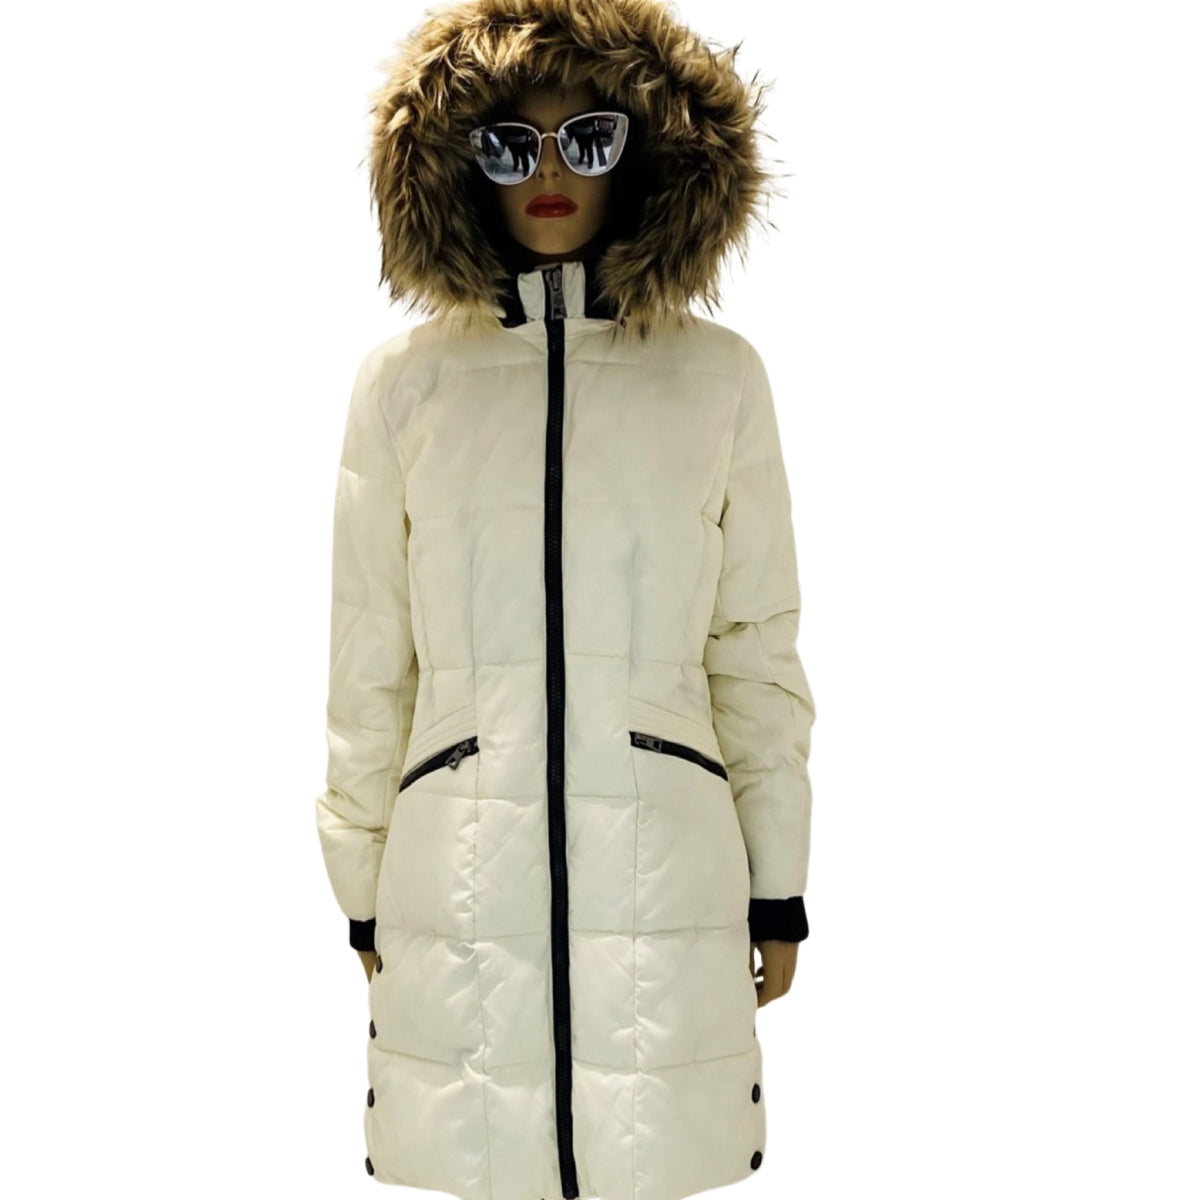 Manteau hiver pour femme. 3R Arctic Wear fièrement Canadien. Un manteau hiver femme solde contenant un matériel imperméable résistant aux grandes intempéries jusqu’à -35 degré.  Lavable à la machine.